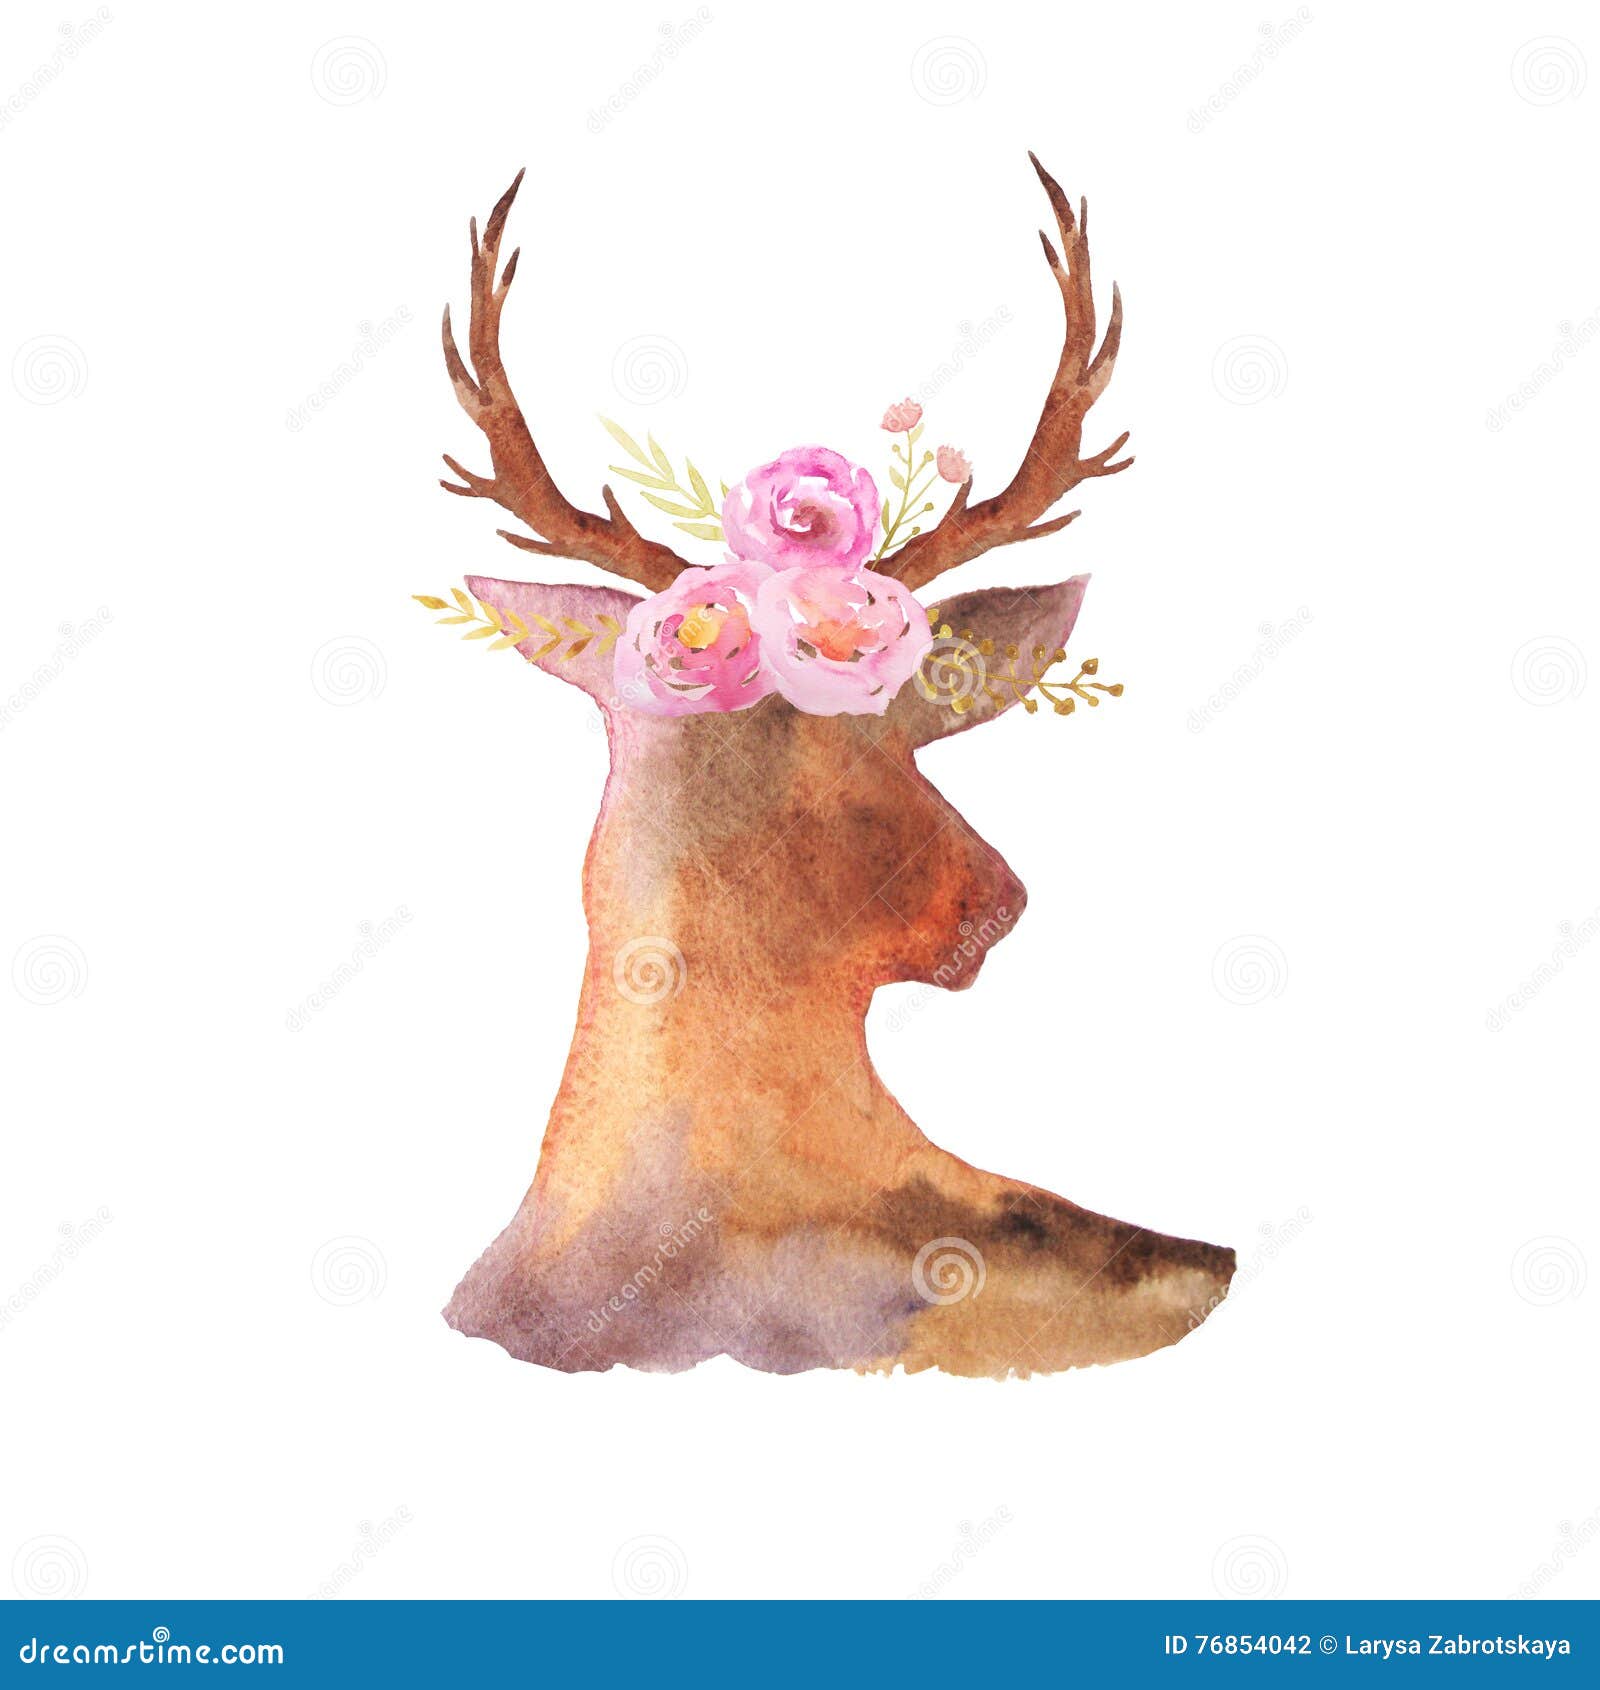 watercolor rustic set of deer,flowers and leaves